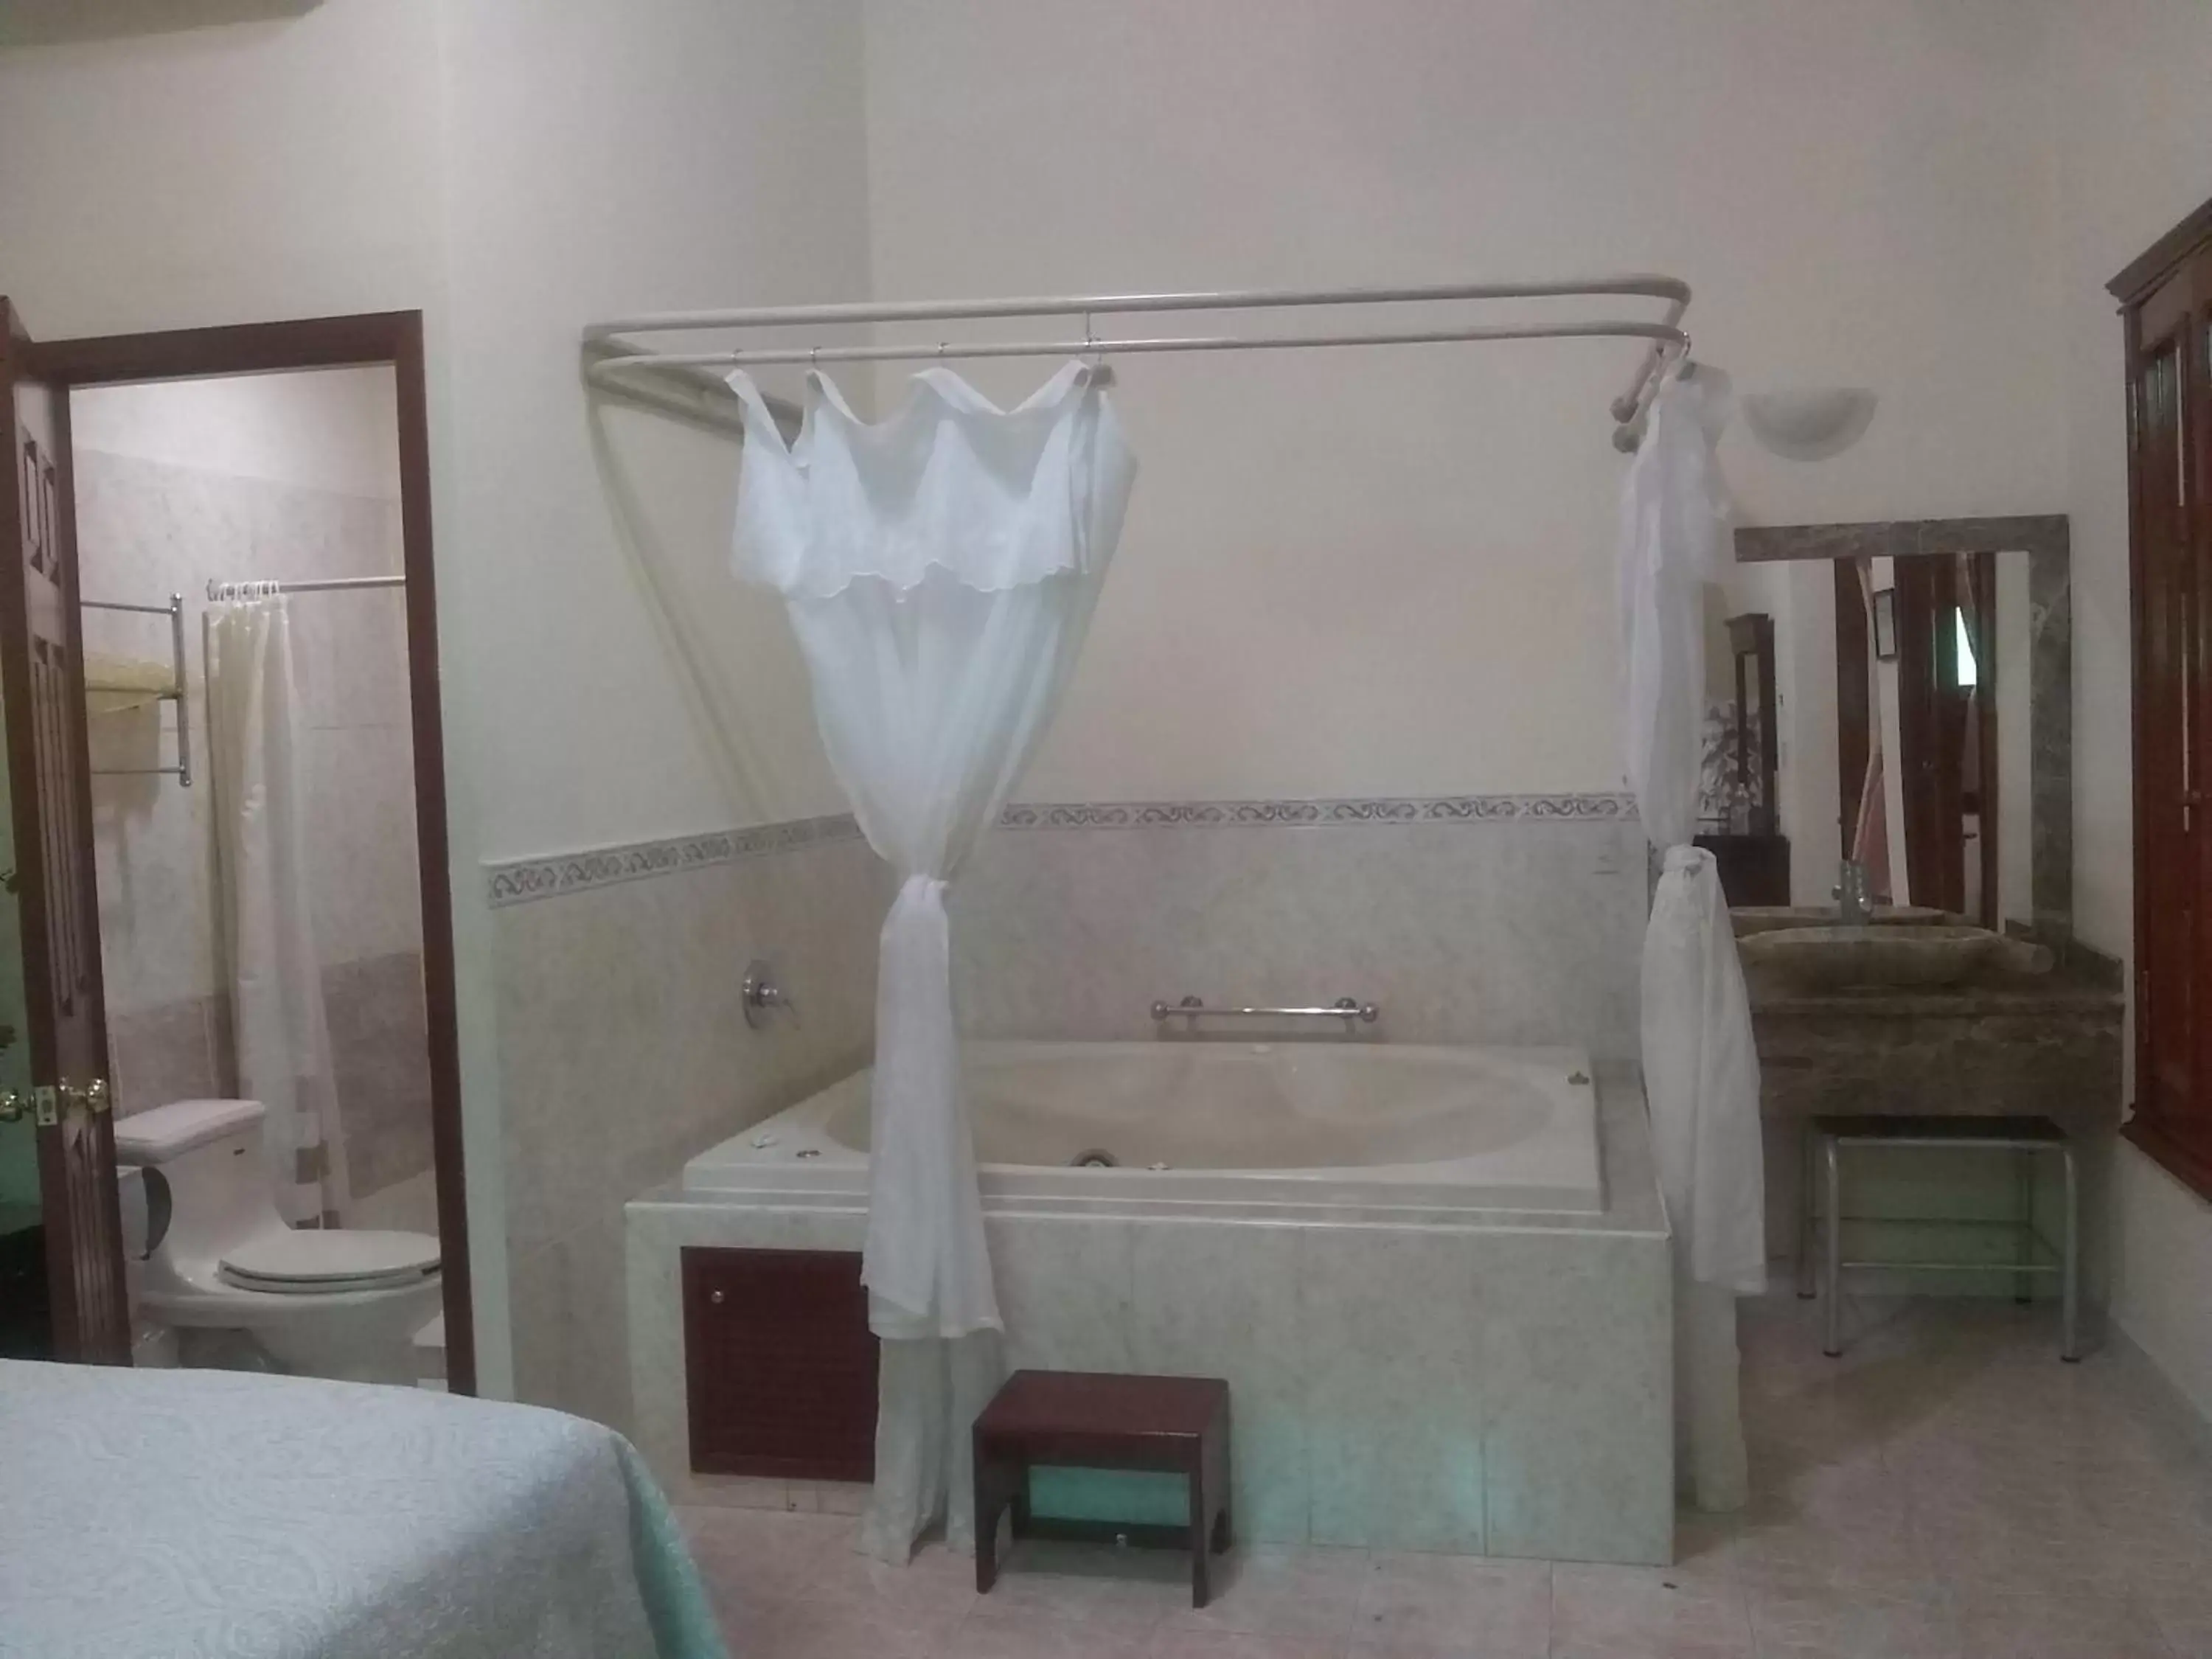 Bathroom in HOTEL CASONA MISIONES